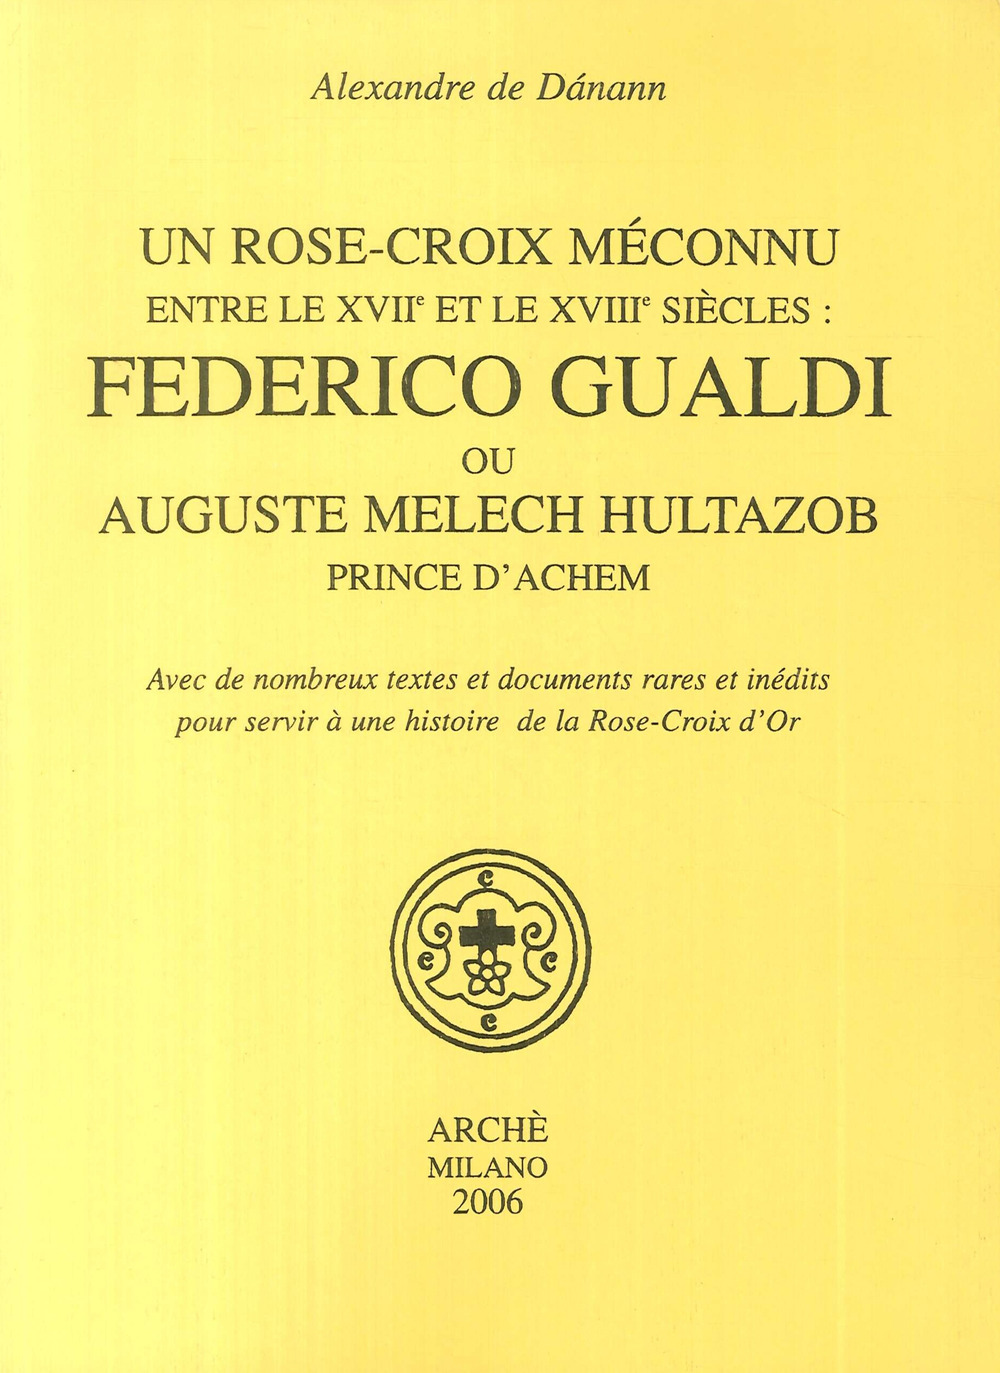 Un Rose-croix meconnu entre le XVIIe et le XVIIIe siècles: Federico Gualdi ou Auguste Melech Hultazob prince d'Achem